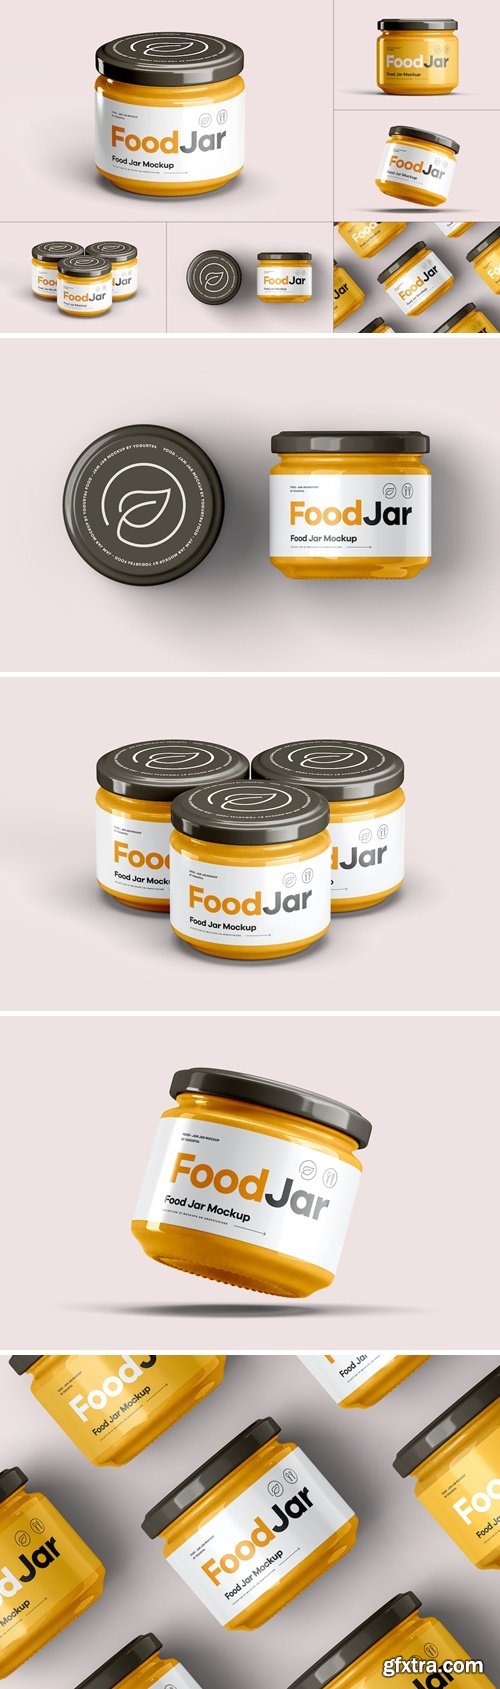 Food Jar Mock-up 2 NBZ4VUK